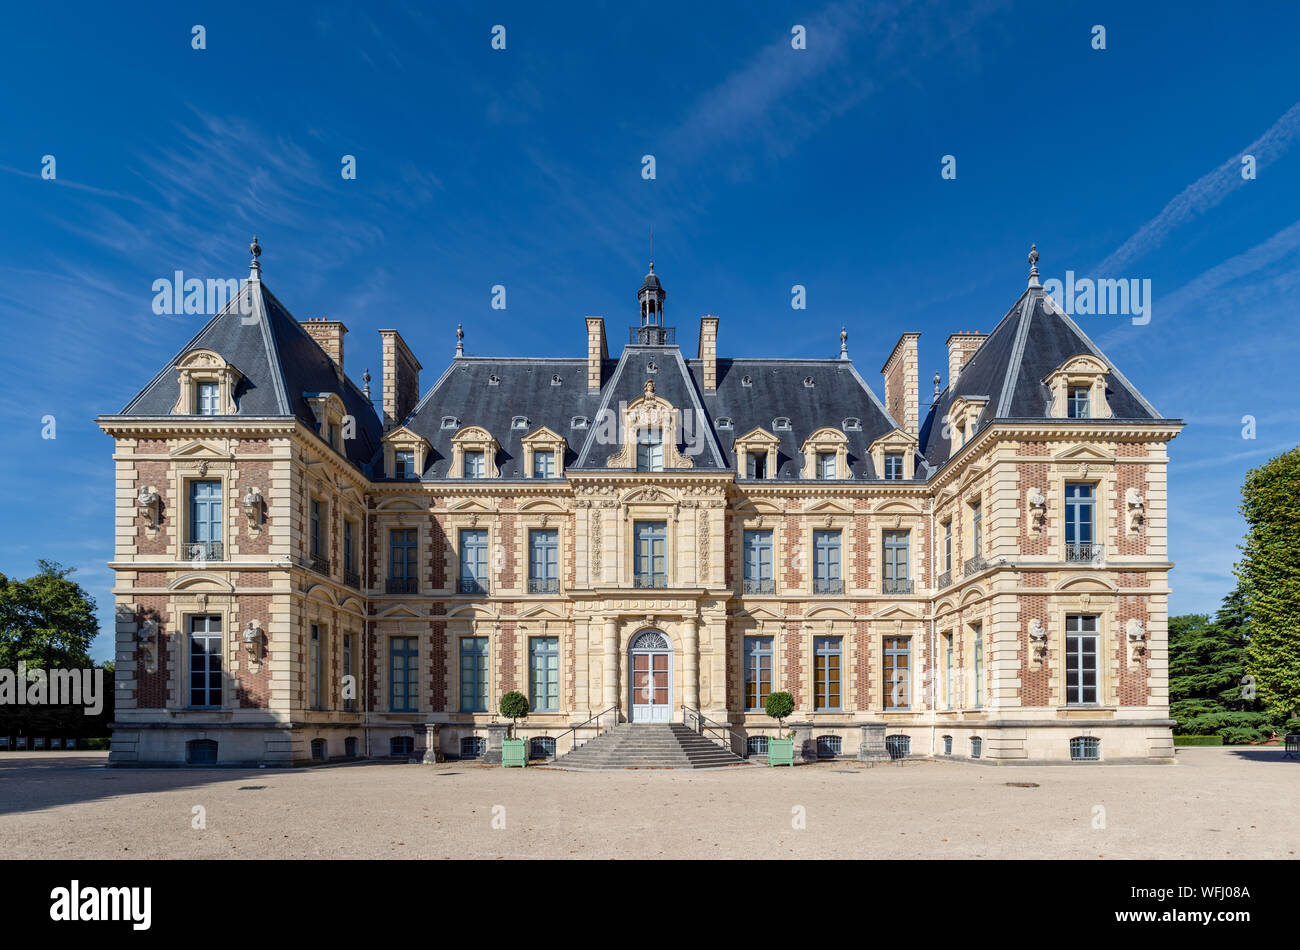 Chateau de Sceaux in summer - Hauts-de-Seine, France Stock Photo